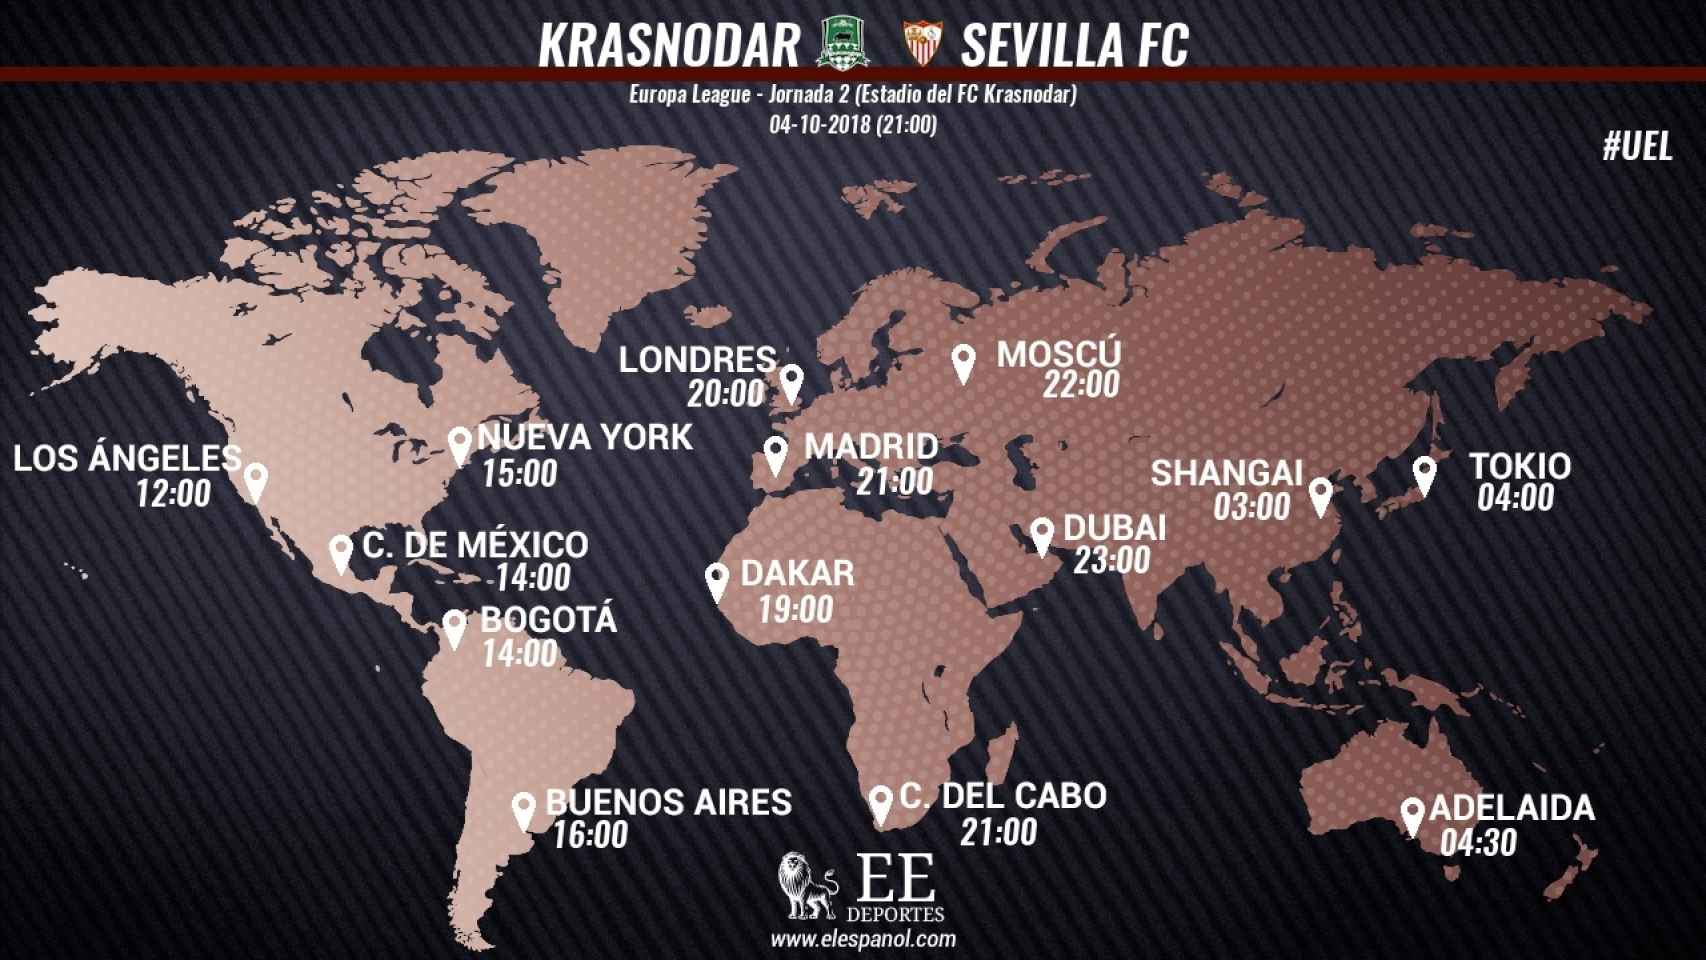 Horario del Krasnodar - Sevilla